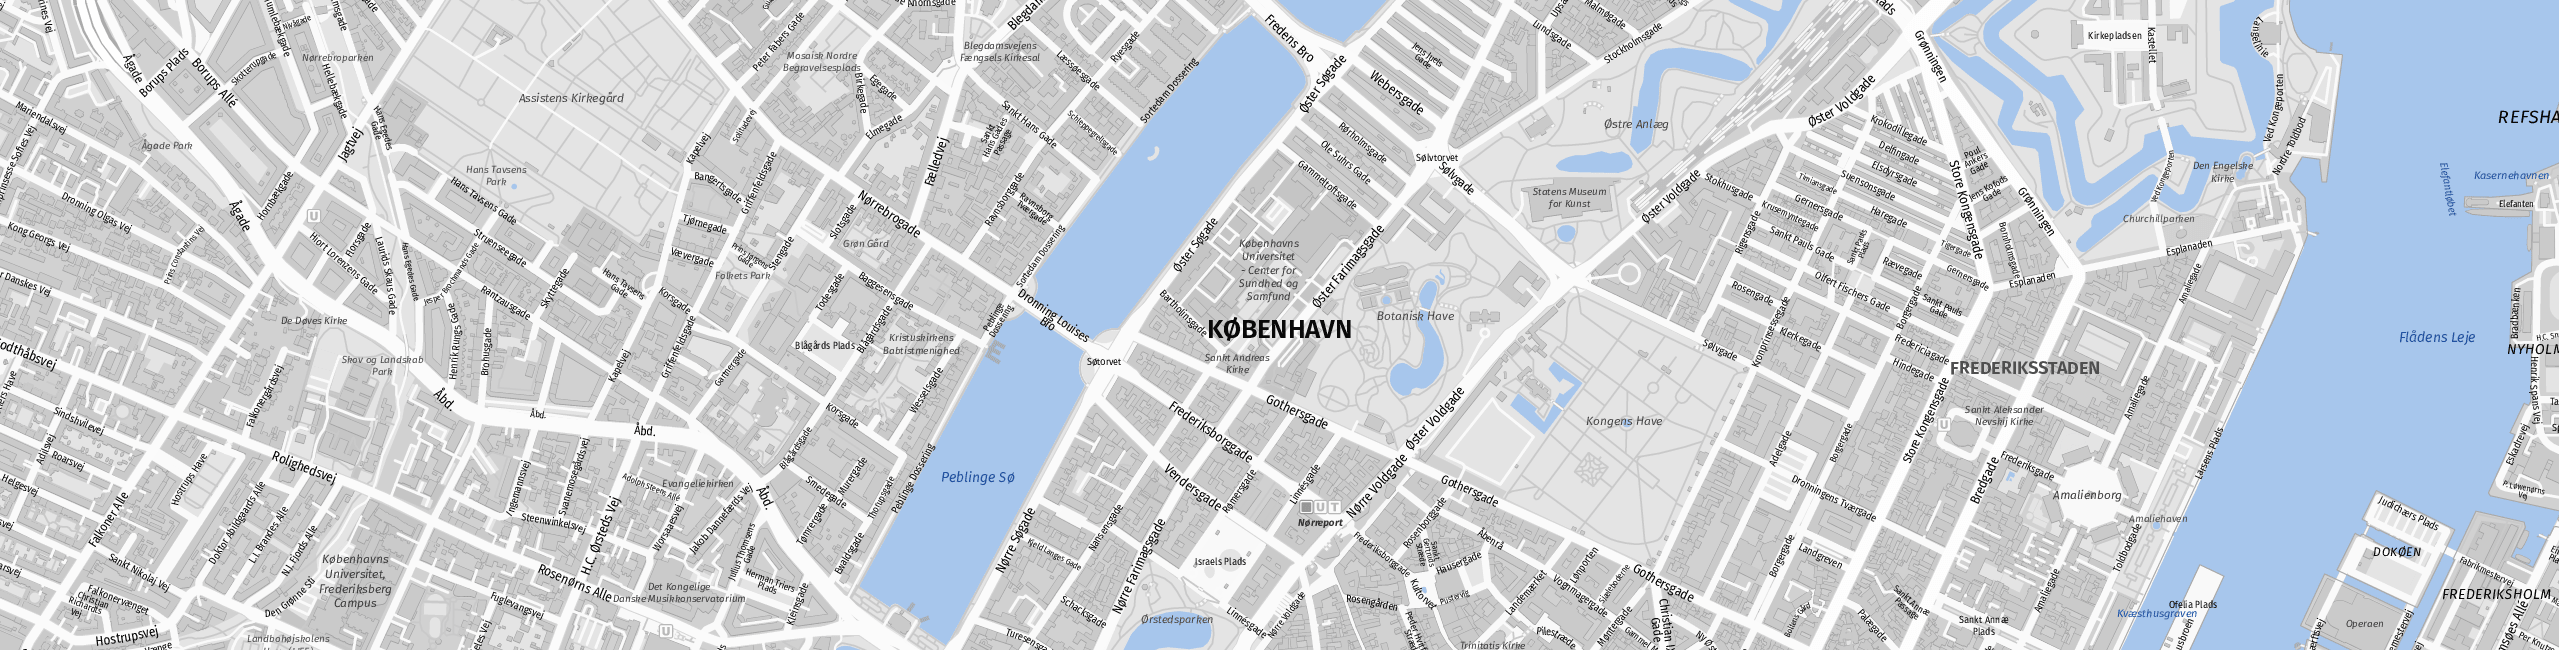 Stadtplan Kopenhagen zum Downloaden.